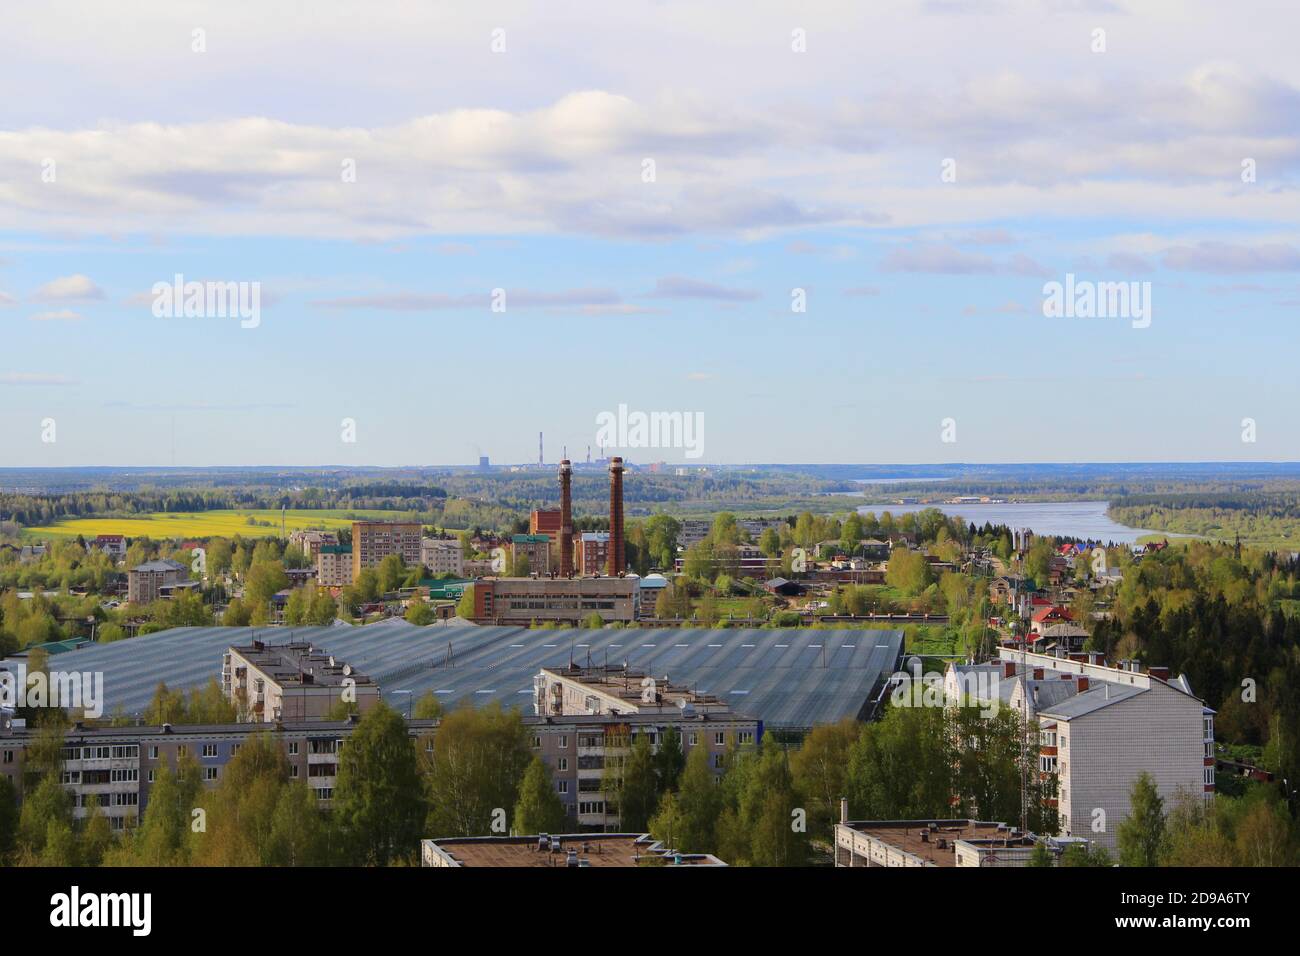 Die städtische Industrielandschaft mit Fabrik, Wohngebäuden und Rohren am Horizont im Sommer in Russland. Eine menschengemachte Landschaft. Eine Industriestadt mit grünen Bäumen. Das Konzept von Industrie, Ökologie und Umweltverschmutzung. Zwei Werksrohre im Vordergrund. Stockfoto